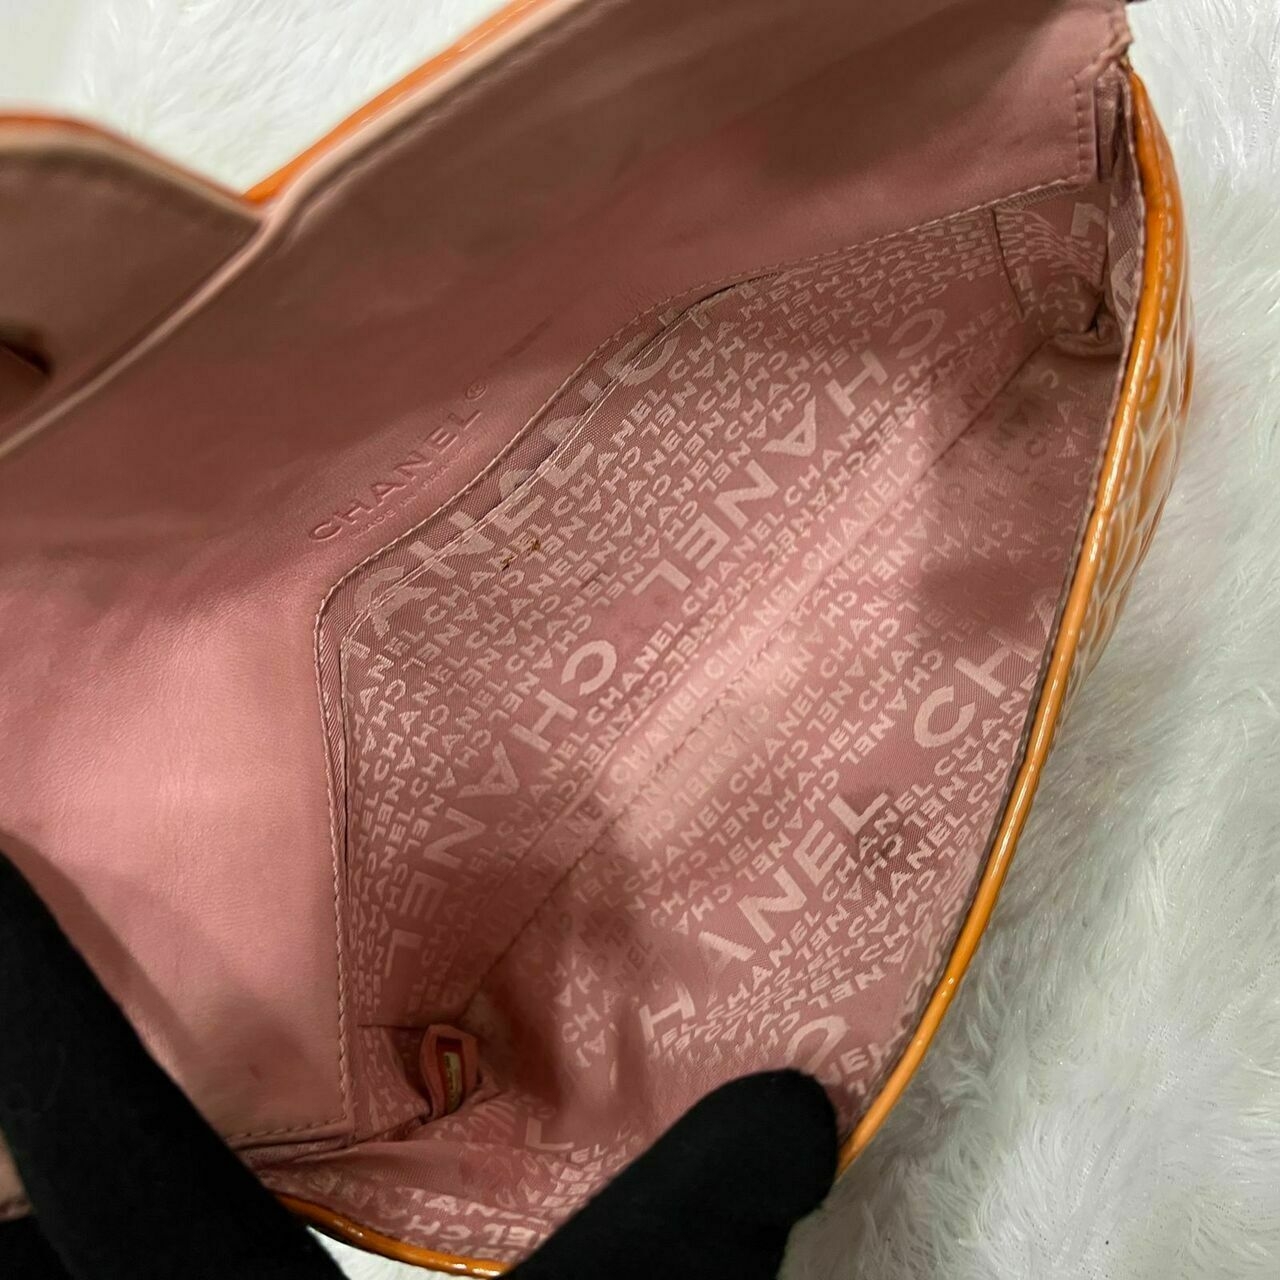 Chanel Vintage Camellia Embossed Orange Patent #8 Shoulder Bag